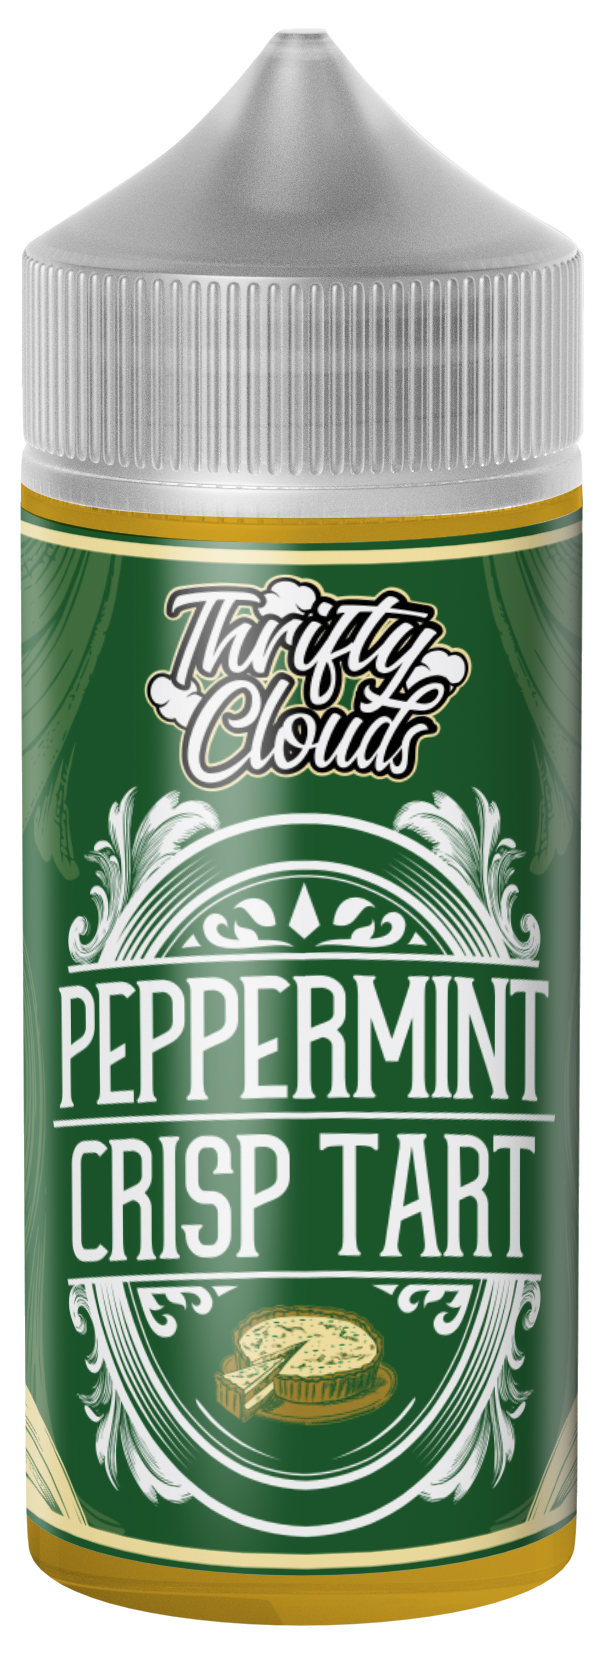 Peppermint Crisp Tart by Thrifty Clouds 100ml